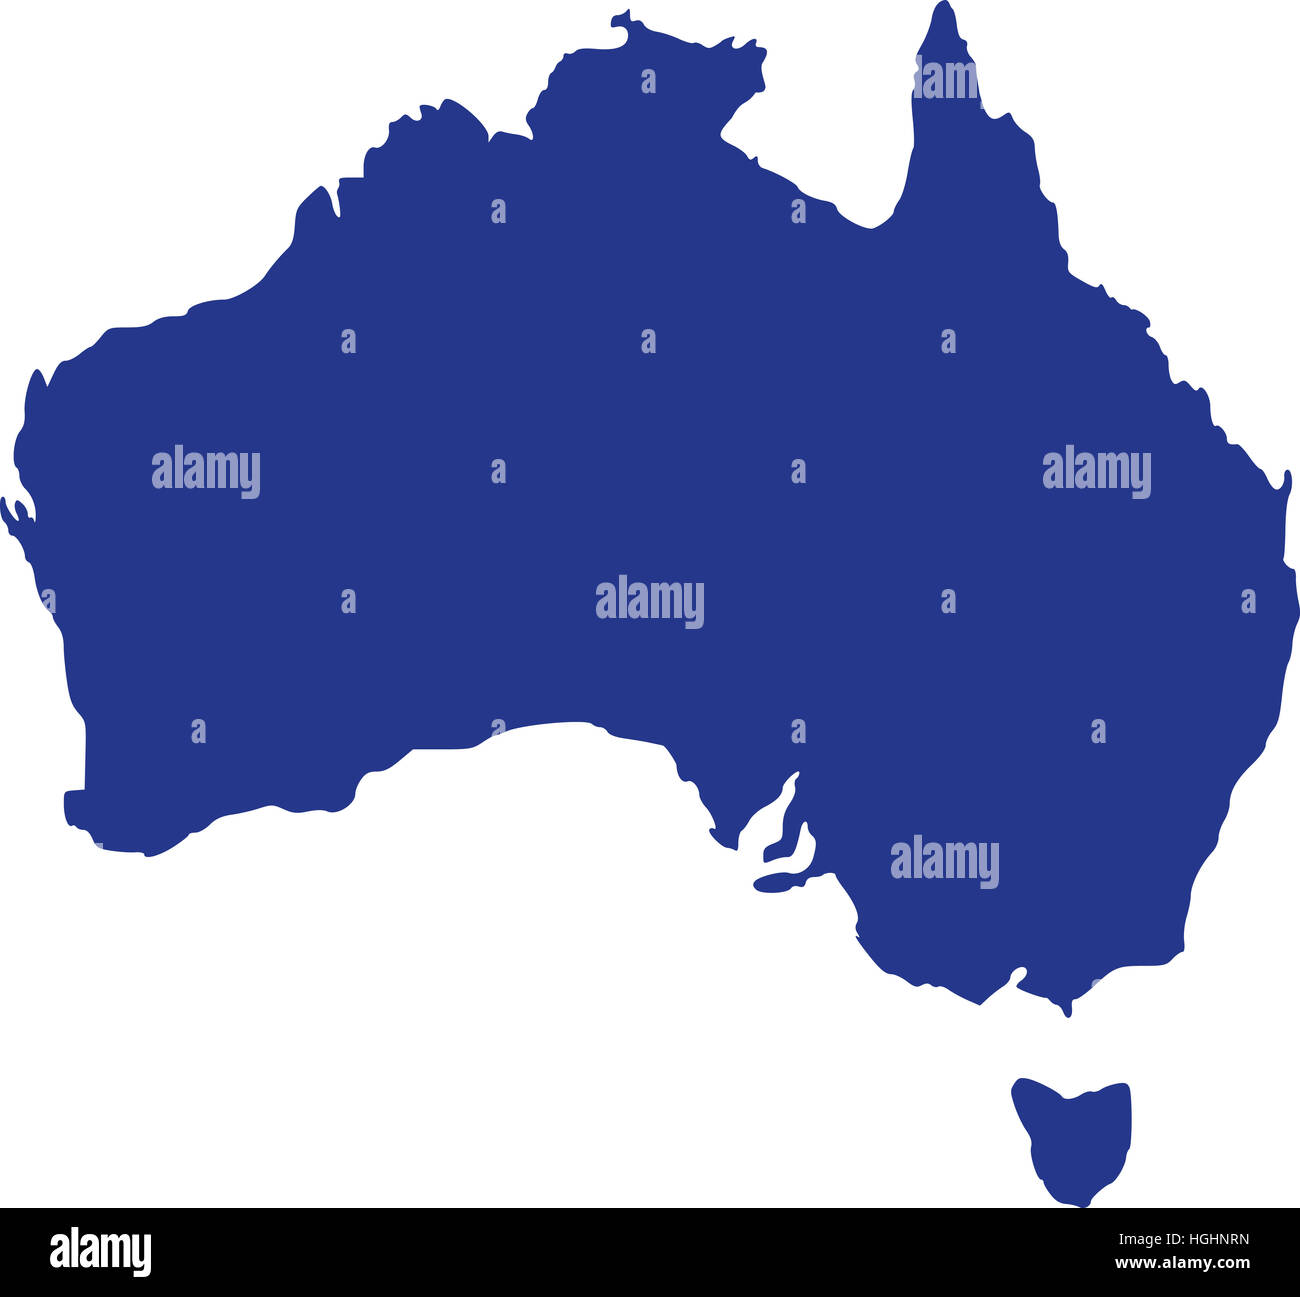 Mapa de Australia Foto de stock